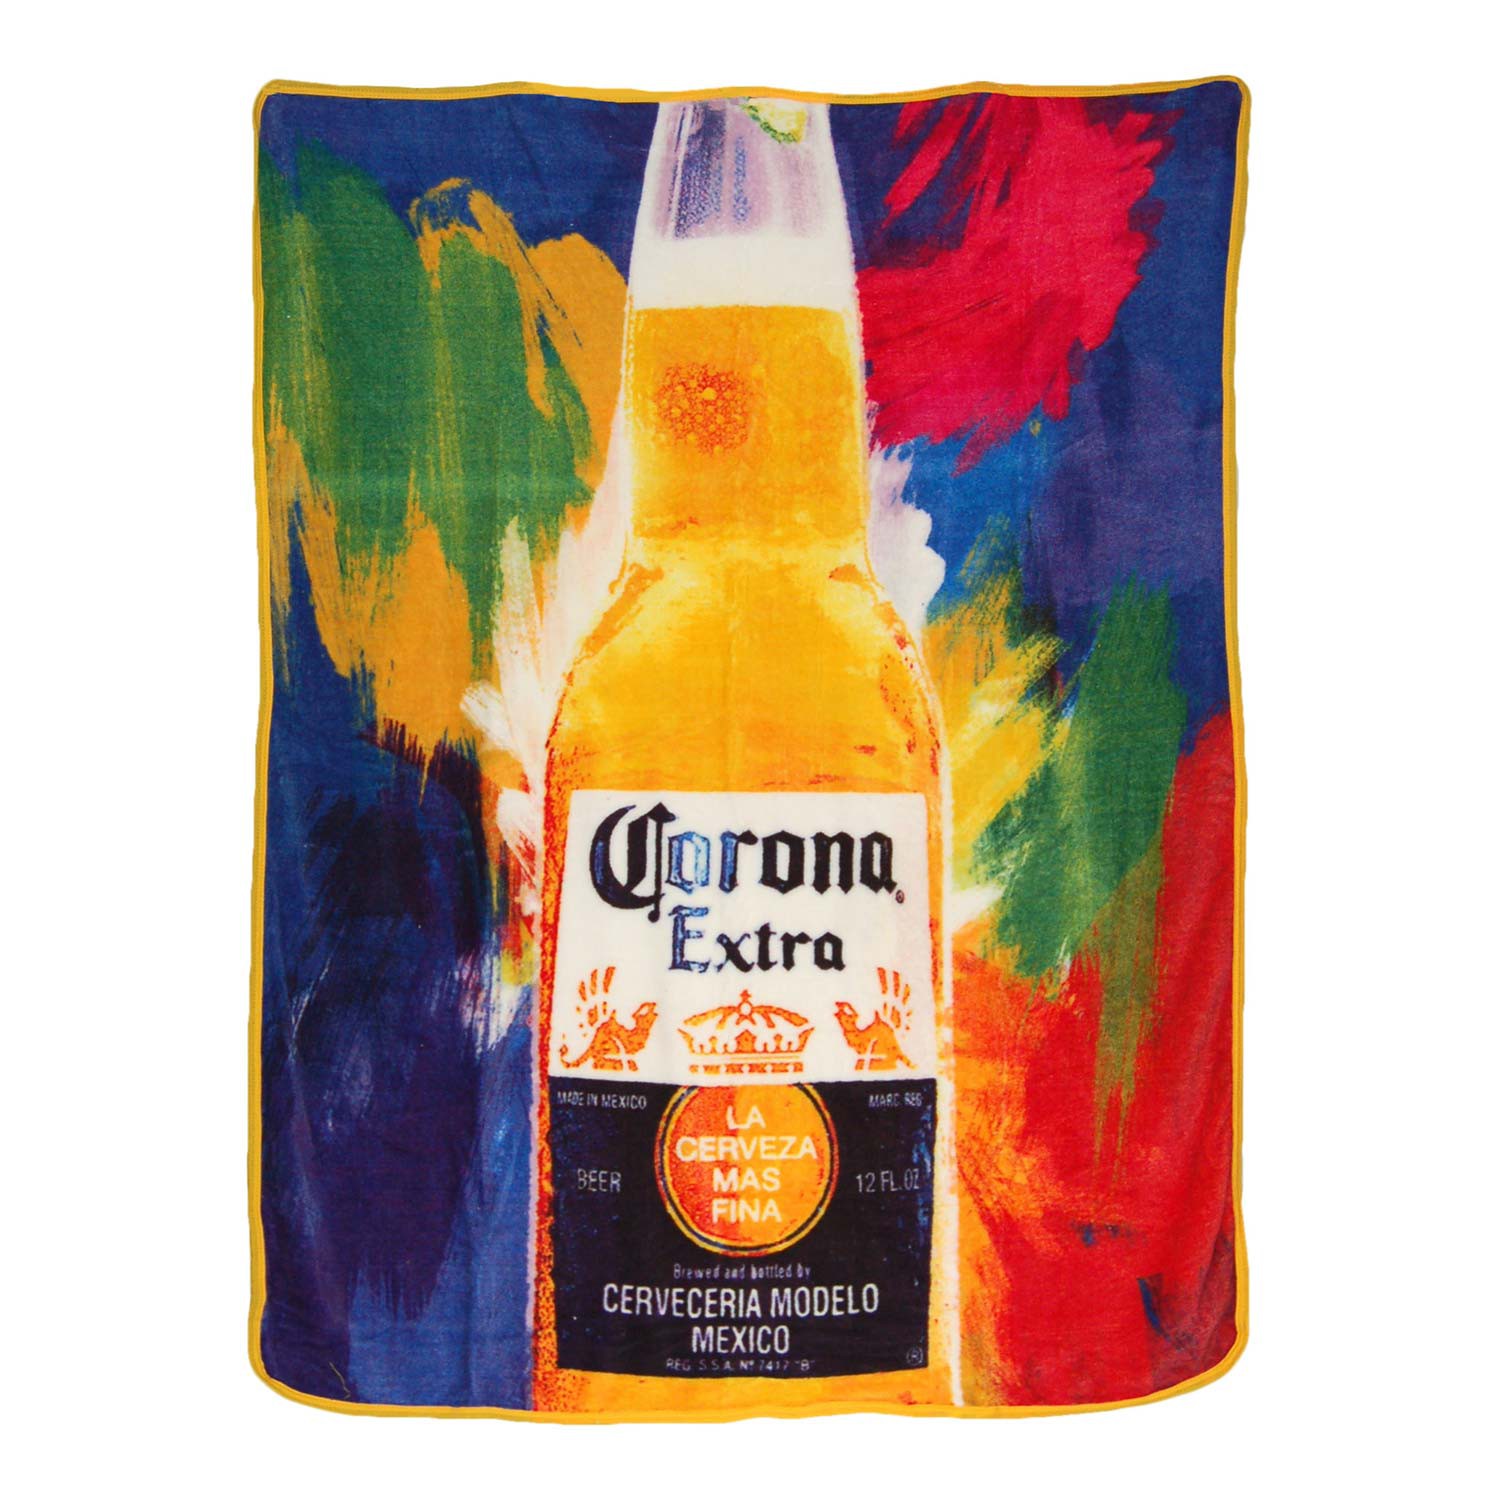 Corona Extra Flashback 40x60 Fleece Throw Blanket